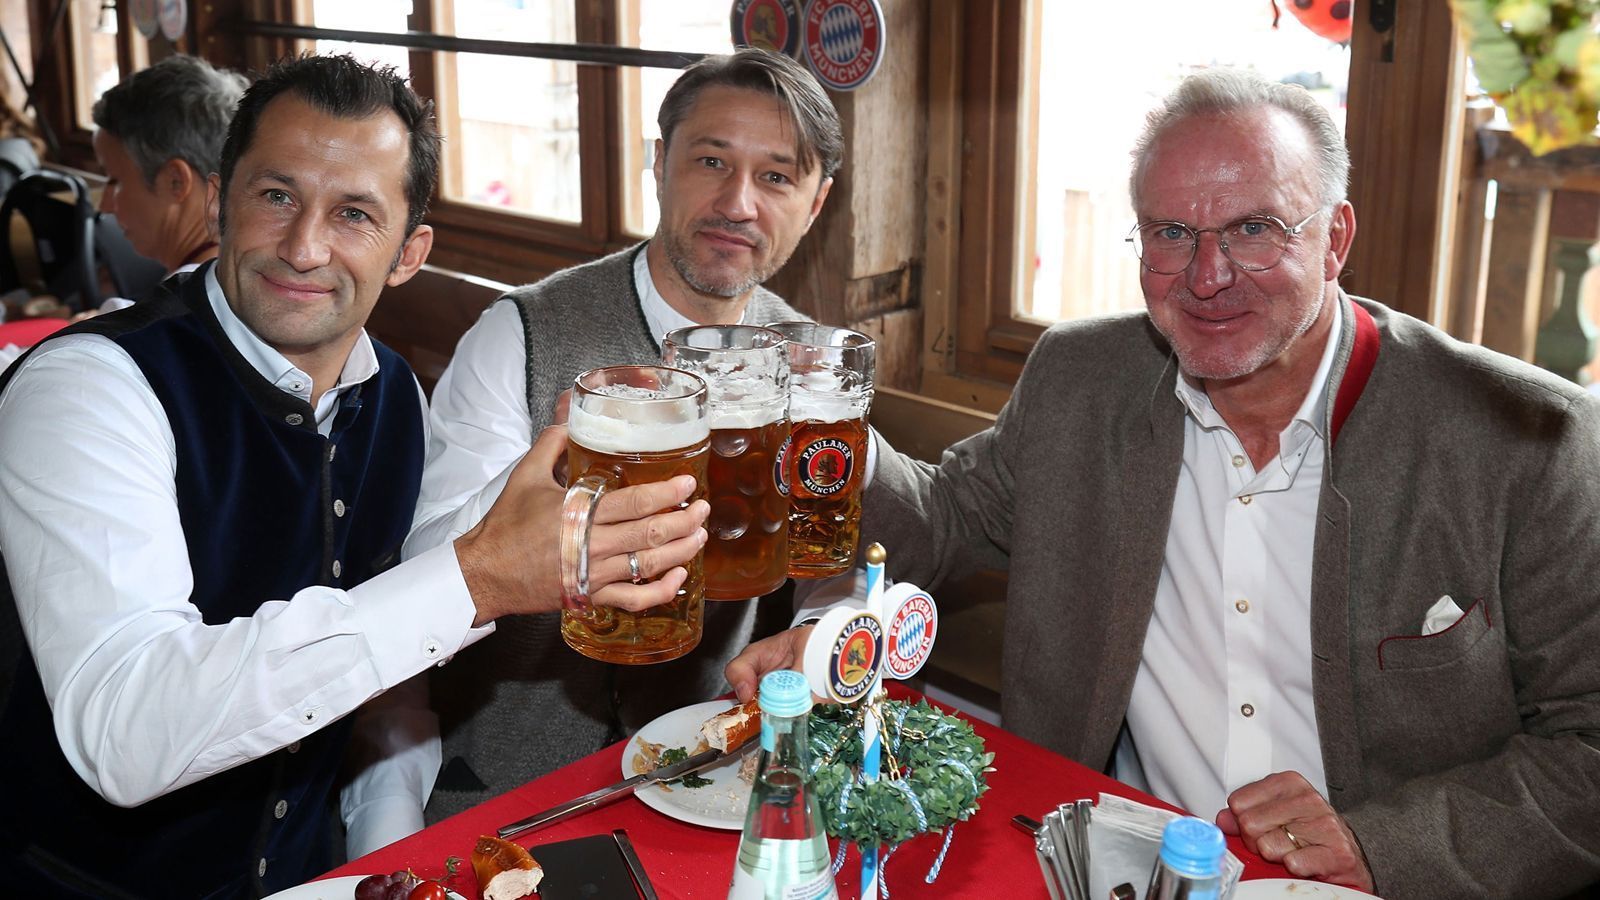 
                <strong>Die Bayern-Stars auf dem Oktoberfest 2019</strong><br>
                Die Münchner Führungsetage um Sportdirektor Hasan Salihamidzic, Trainer Niko Kovac und Vorstandsboss Karl-Heinz Rummenigge (v.l.n.r.) zeigte sich trotz der ersten Saisonniederlage in der Bundesliga entspannt. Immerhin haben zeitgleich auch die wohl härtesten Bayern-Konkurrenten Borussia Dortmund und RB Leipzig ebenfalls gepatzt.
              